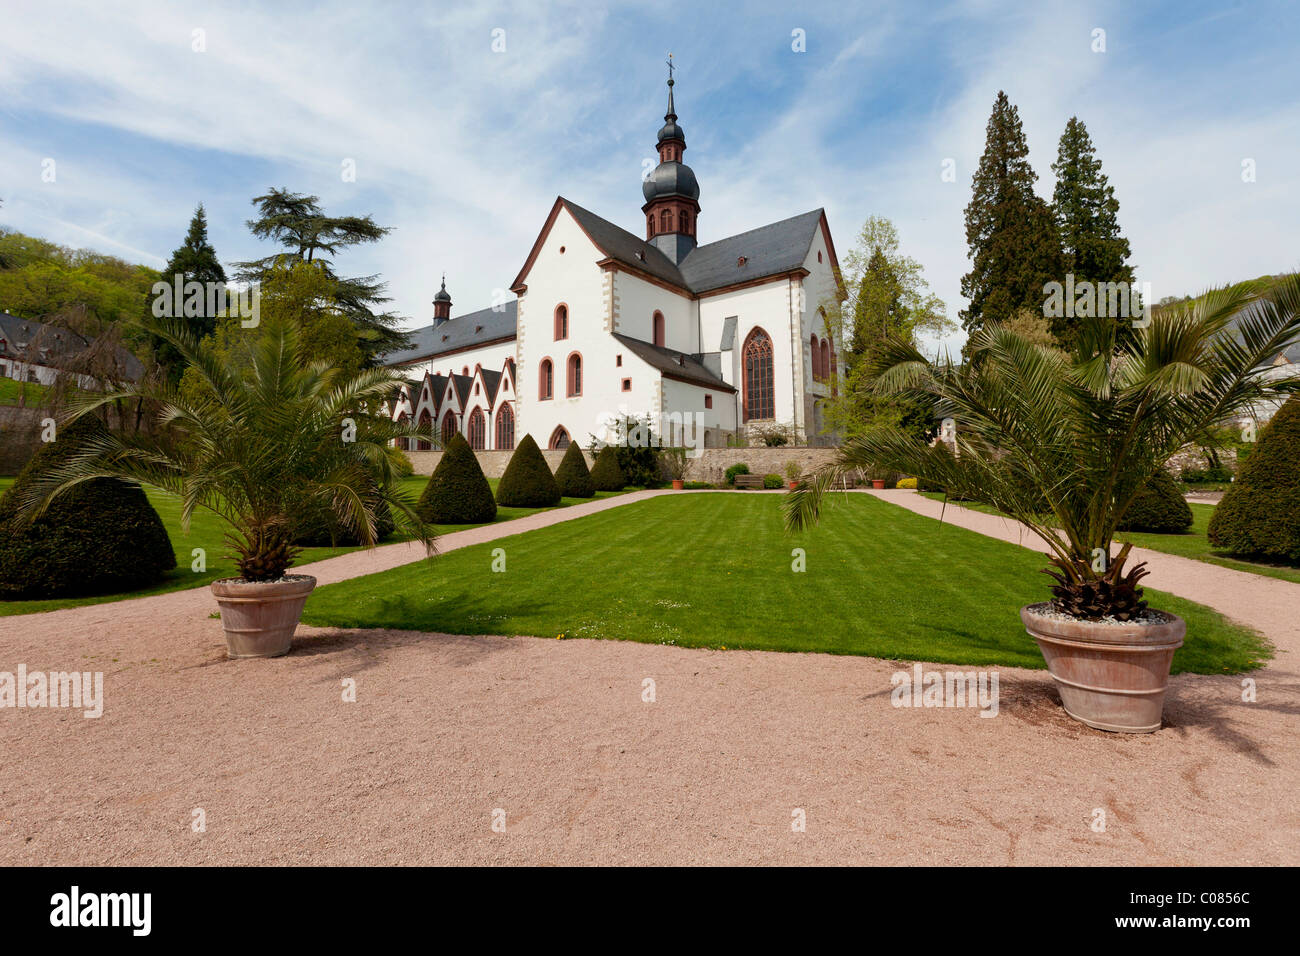 Basilica, abbey church, Kloster Eberbach Abbey, Eltville am Rhein, Rheingau, Hesse, Germany, Europe Stock Photo